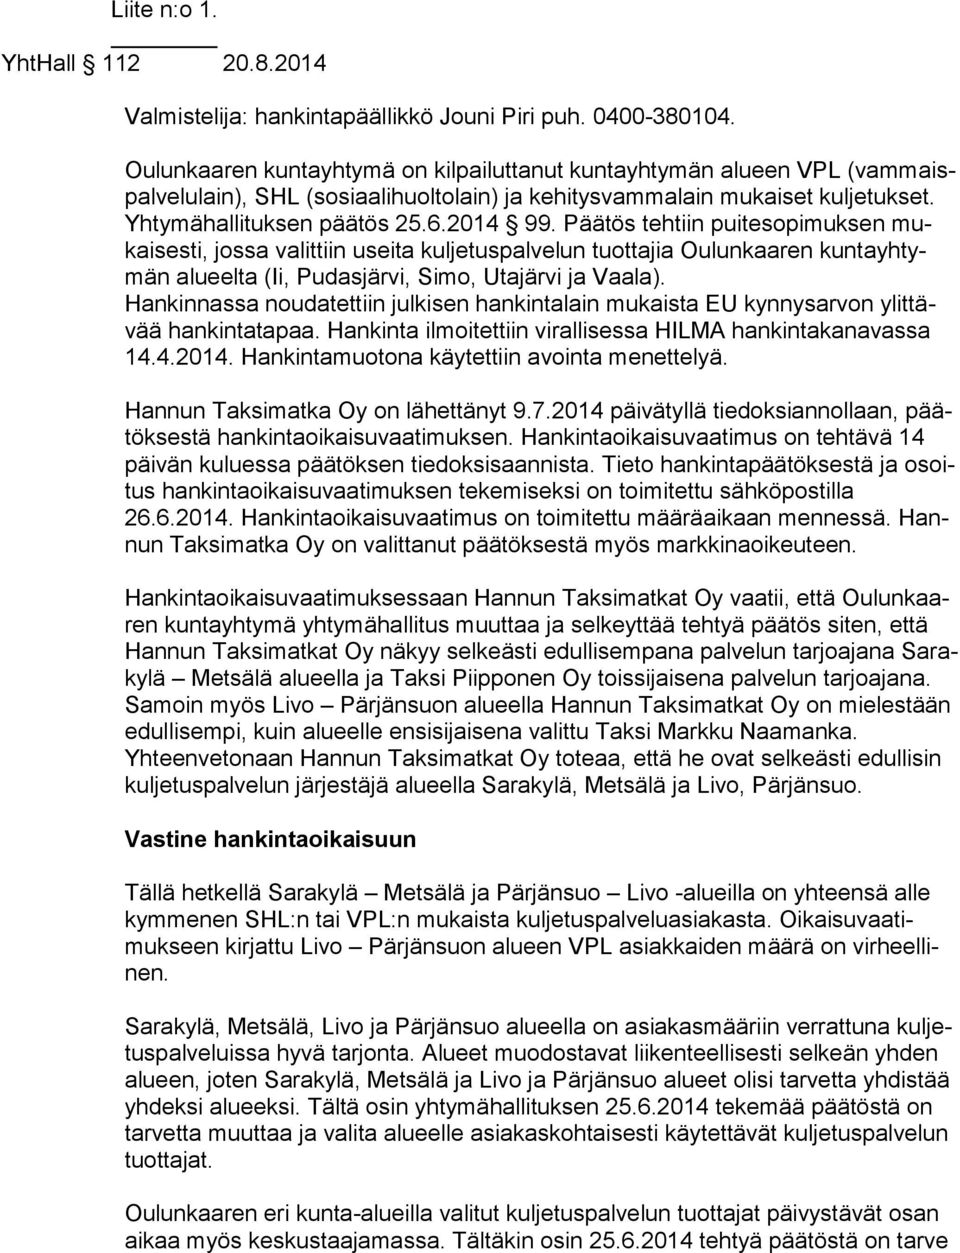 Päätös tehtiin puitesopimuksen mukai ses ti, jossa valittiin useita kuljetuspalvelun tuottajia Oulunkaaren kun ta yh tymän alueelta (Ii, Pudasjärvi, Simo, Utajärvi ja Vaala).